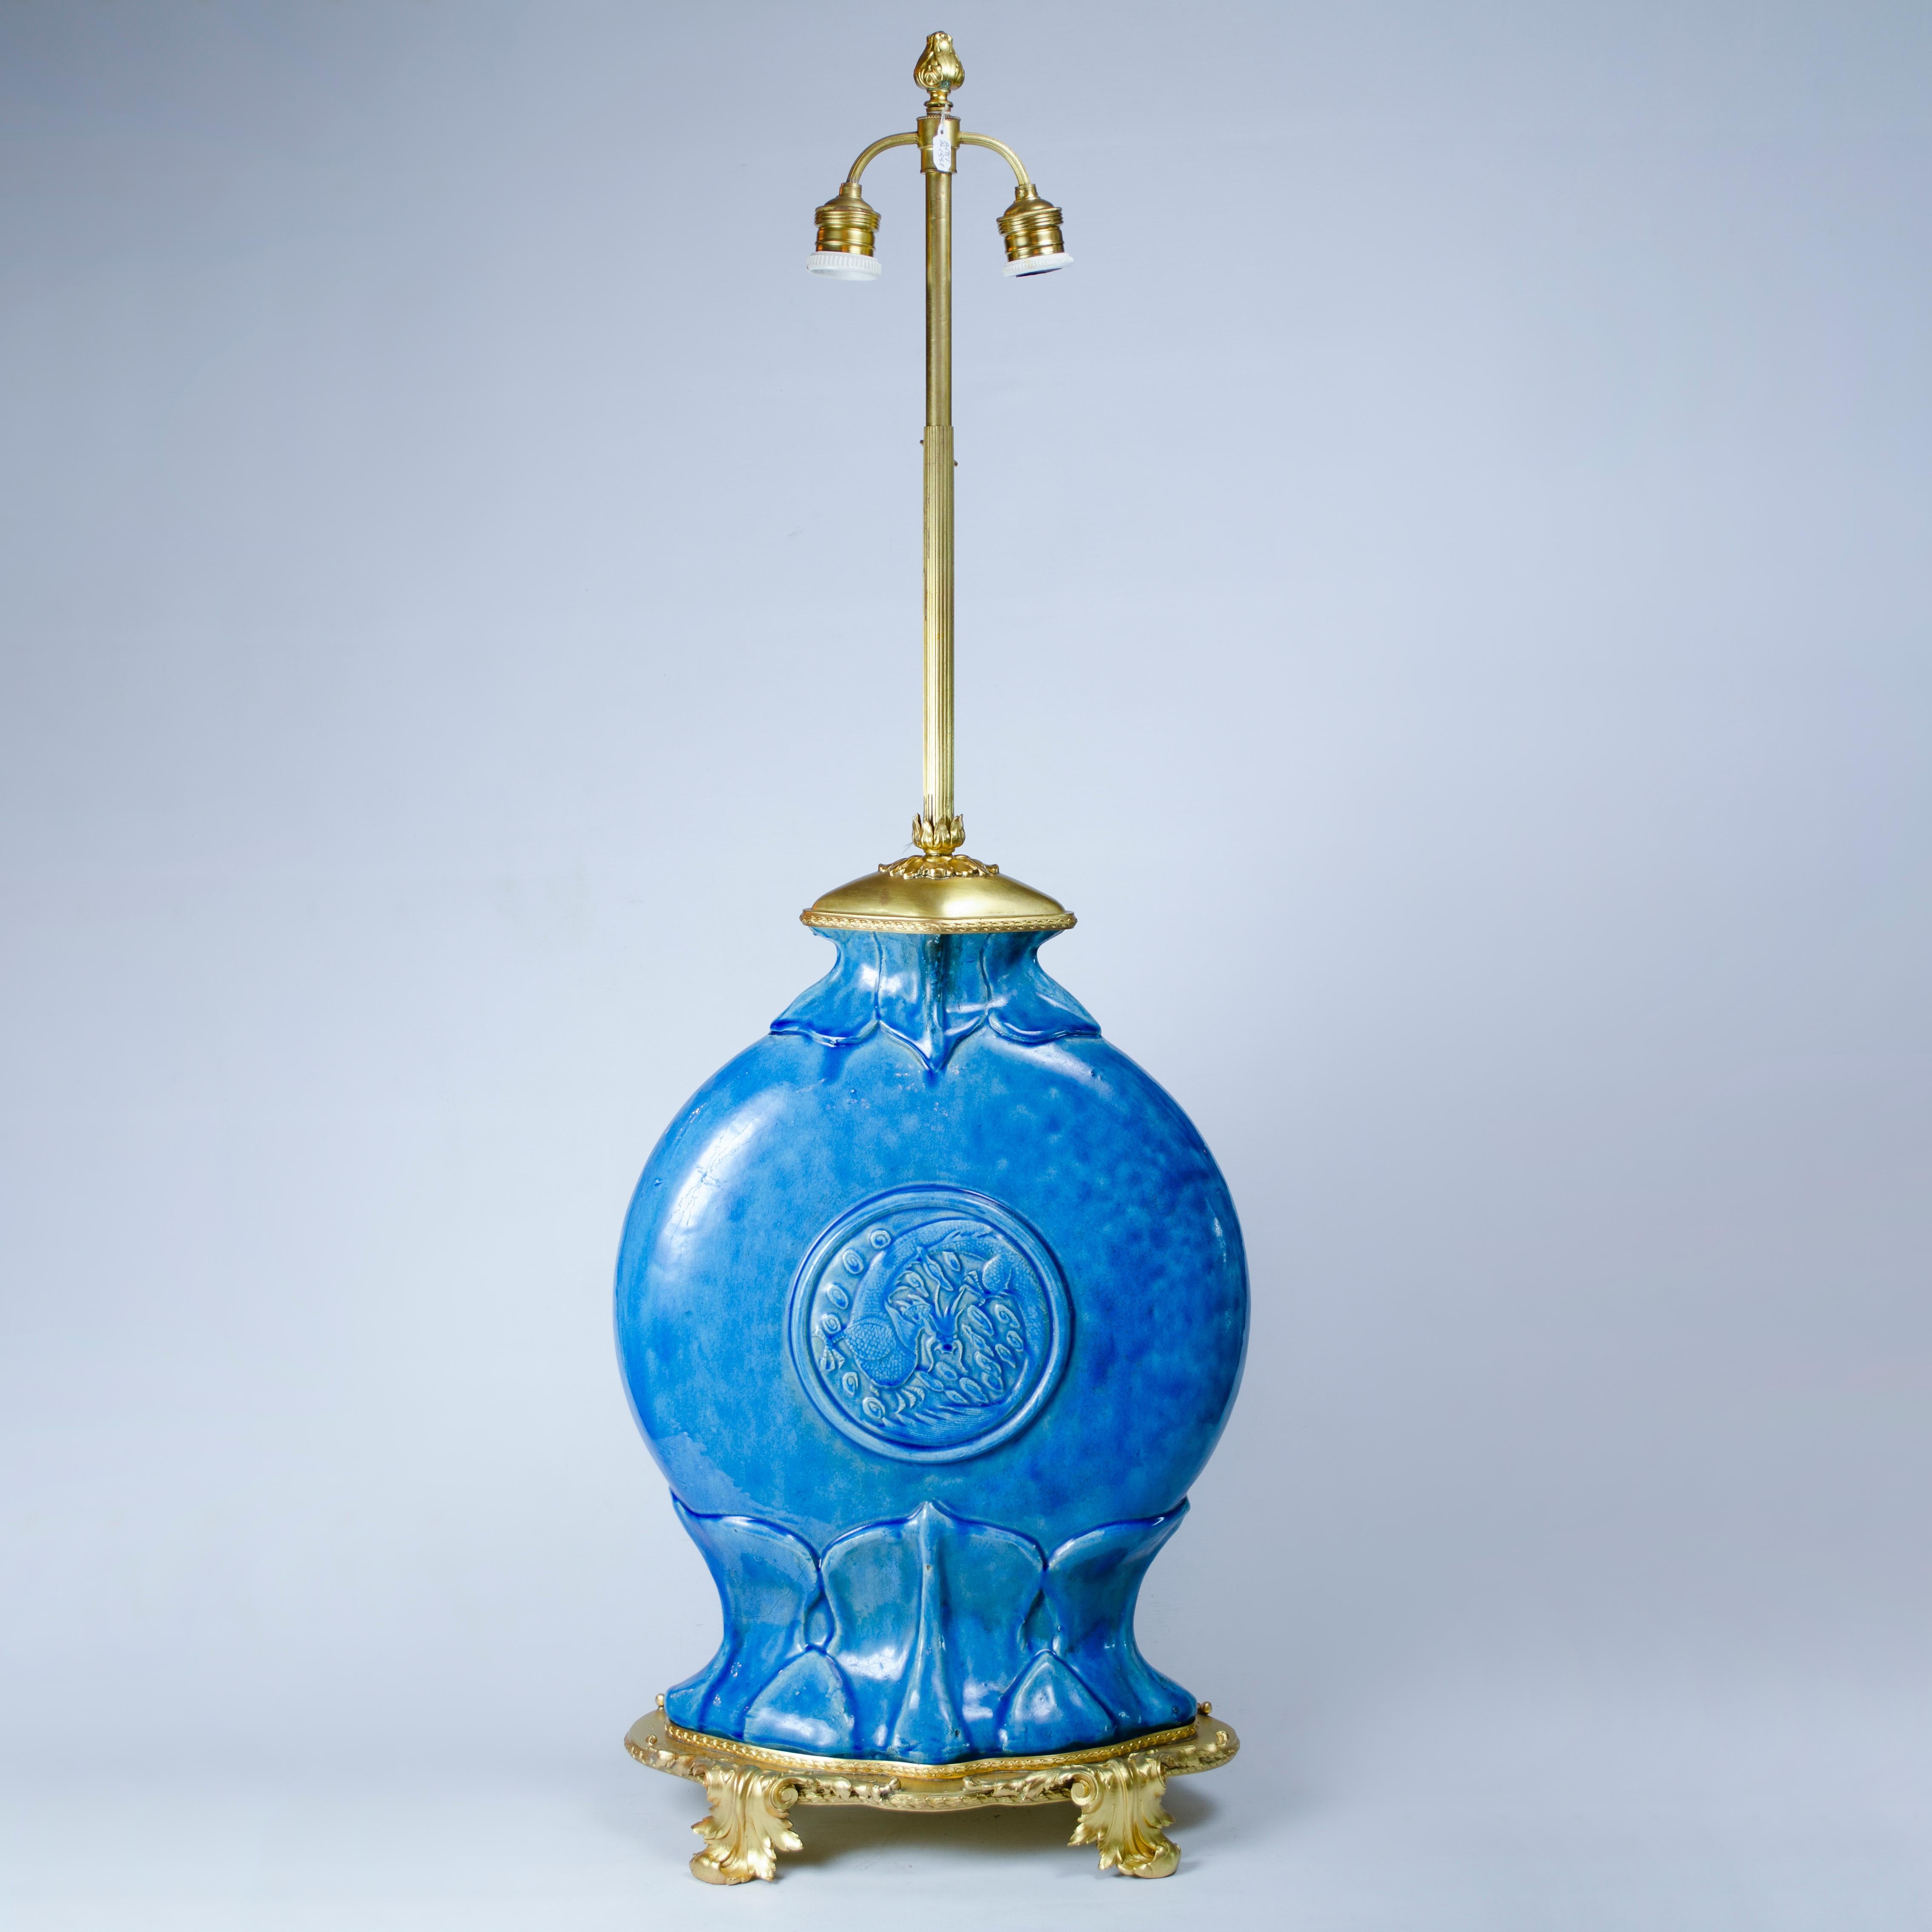 Paire de lampes de table en céramique à glaçure bleue, avec base et tige en bronze, réalisées par Theodore Deck (1823-1891). Signé HT DECK, MADE IN FRANCE, France,

France, CIRCA 1880.